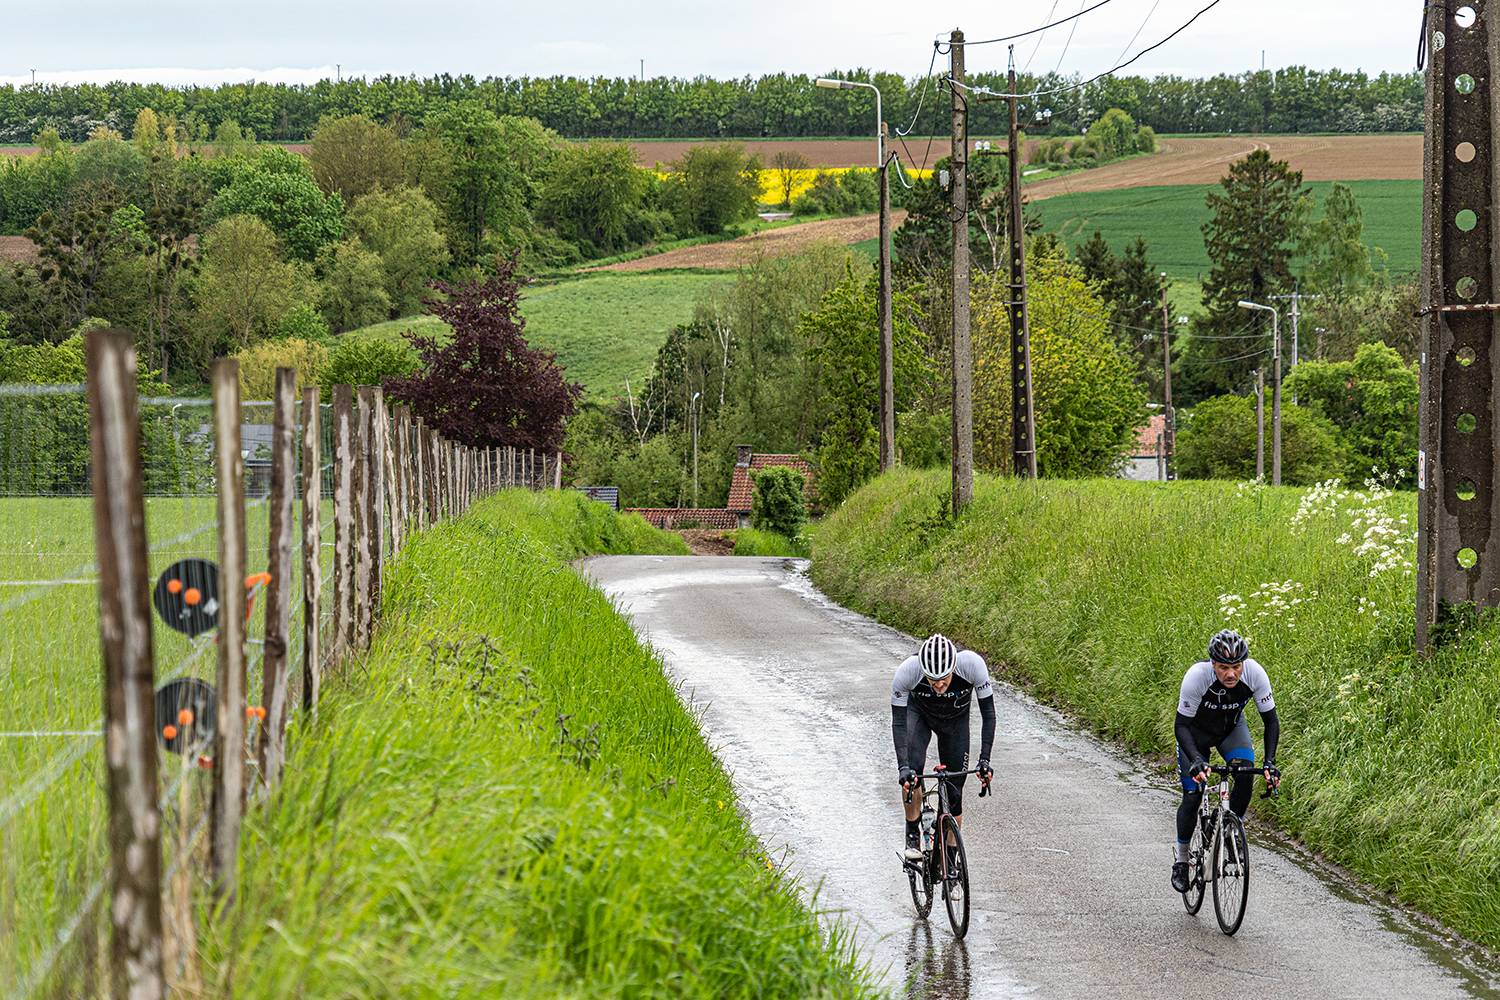 Wielrenners fietsen een heuvel op in prachtig Belgisch landschap